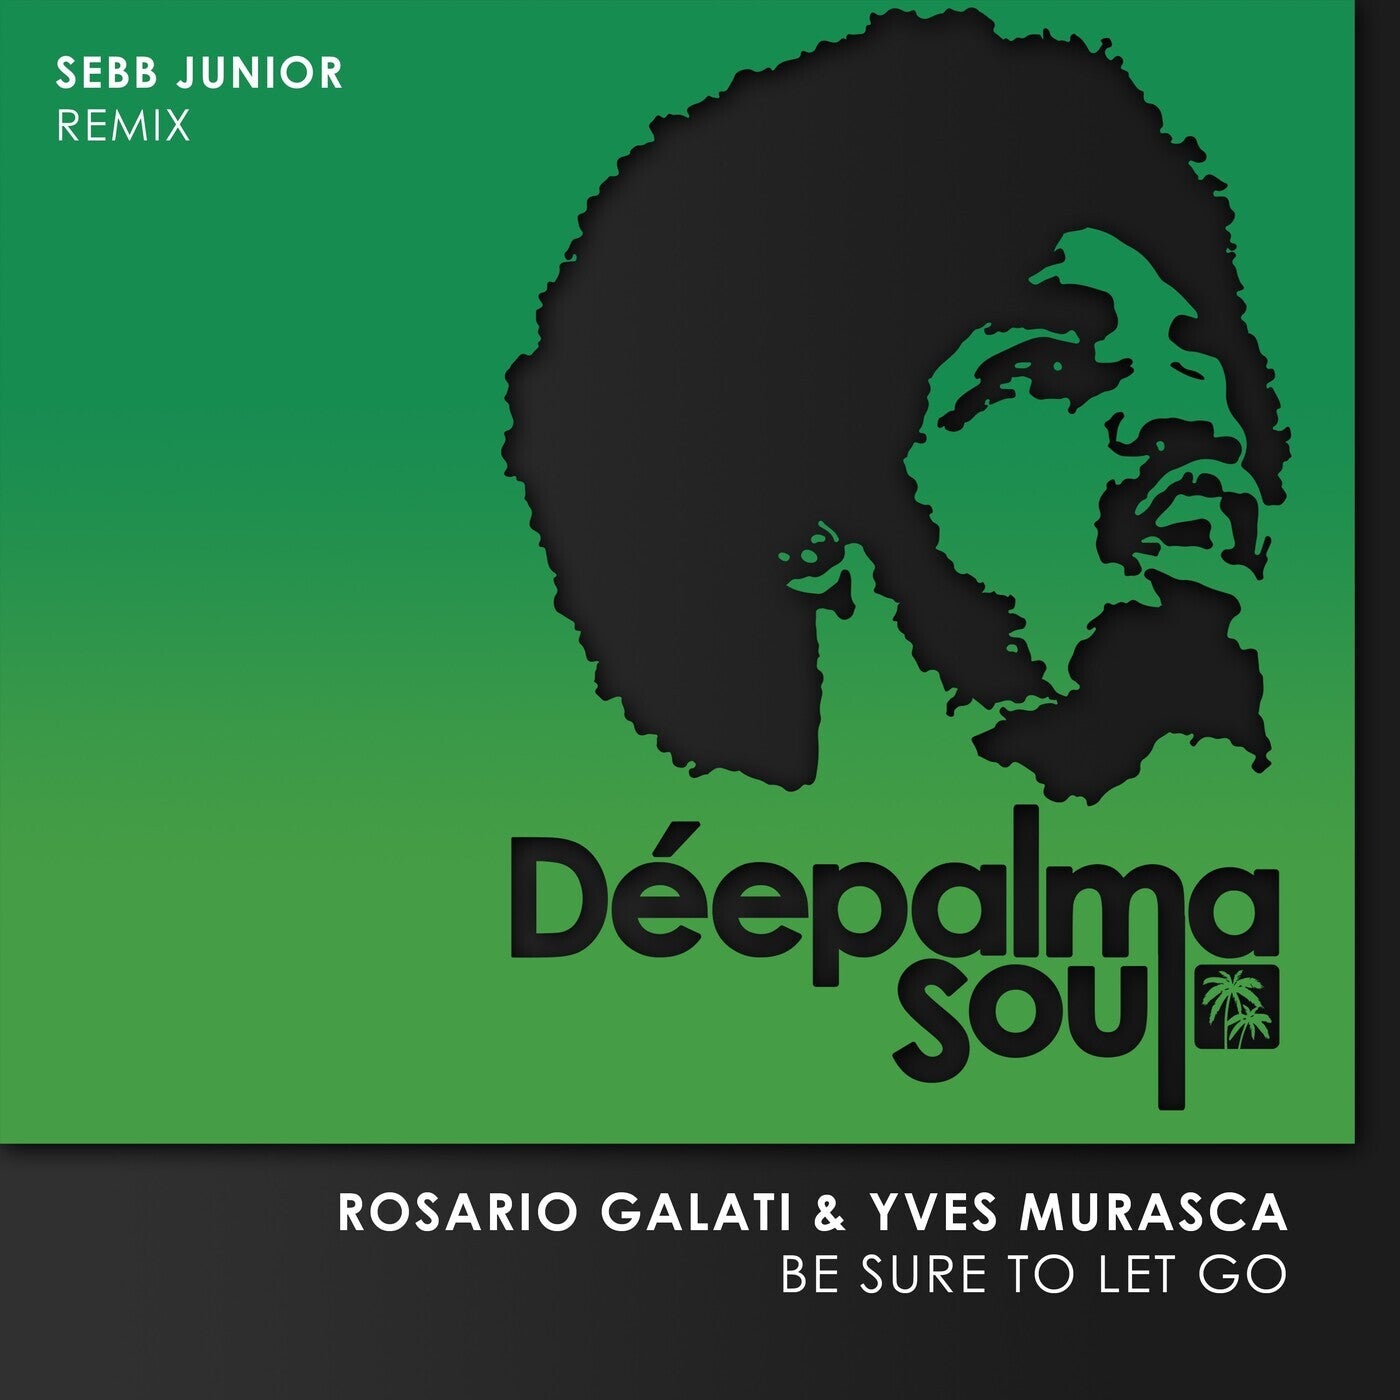 Be Sure to Let Go (Sebb Junior Remix)